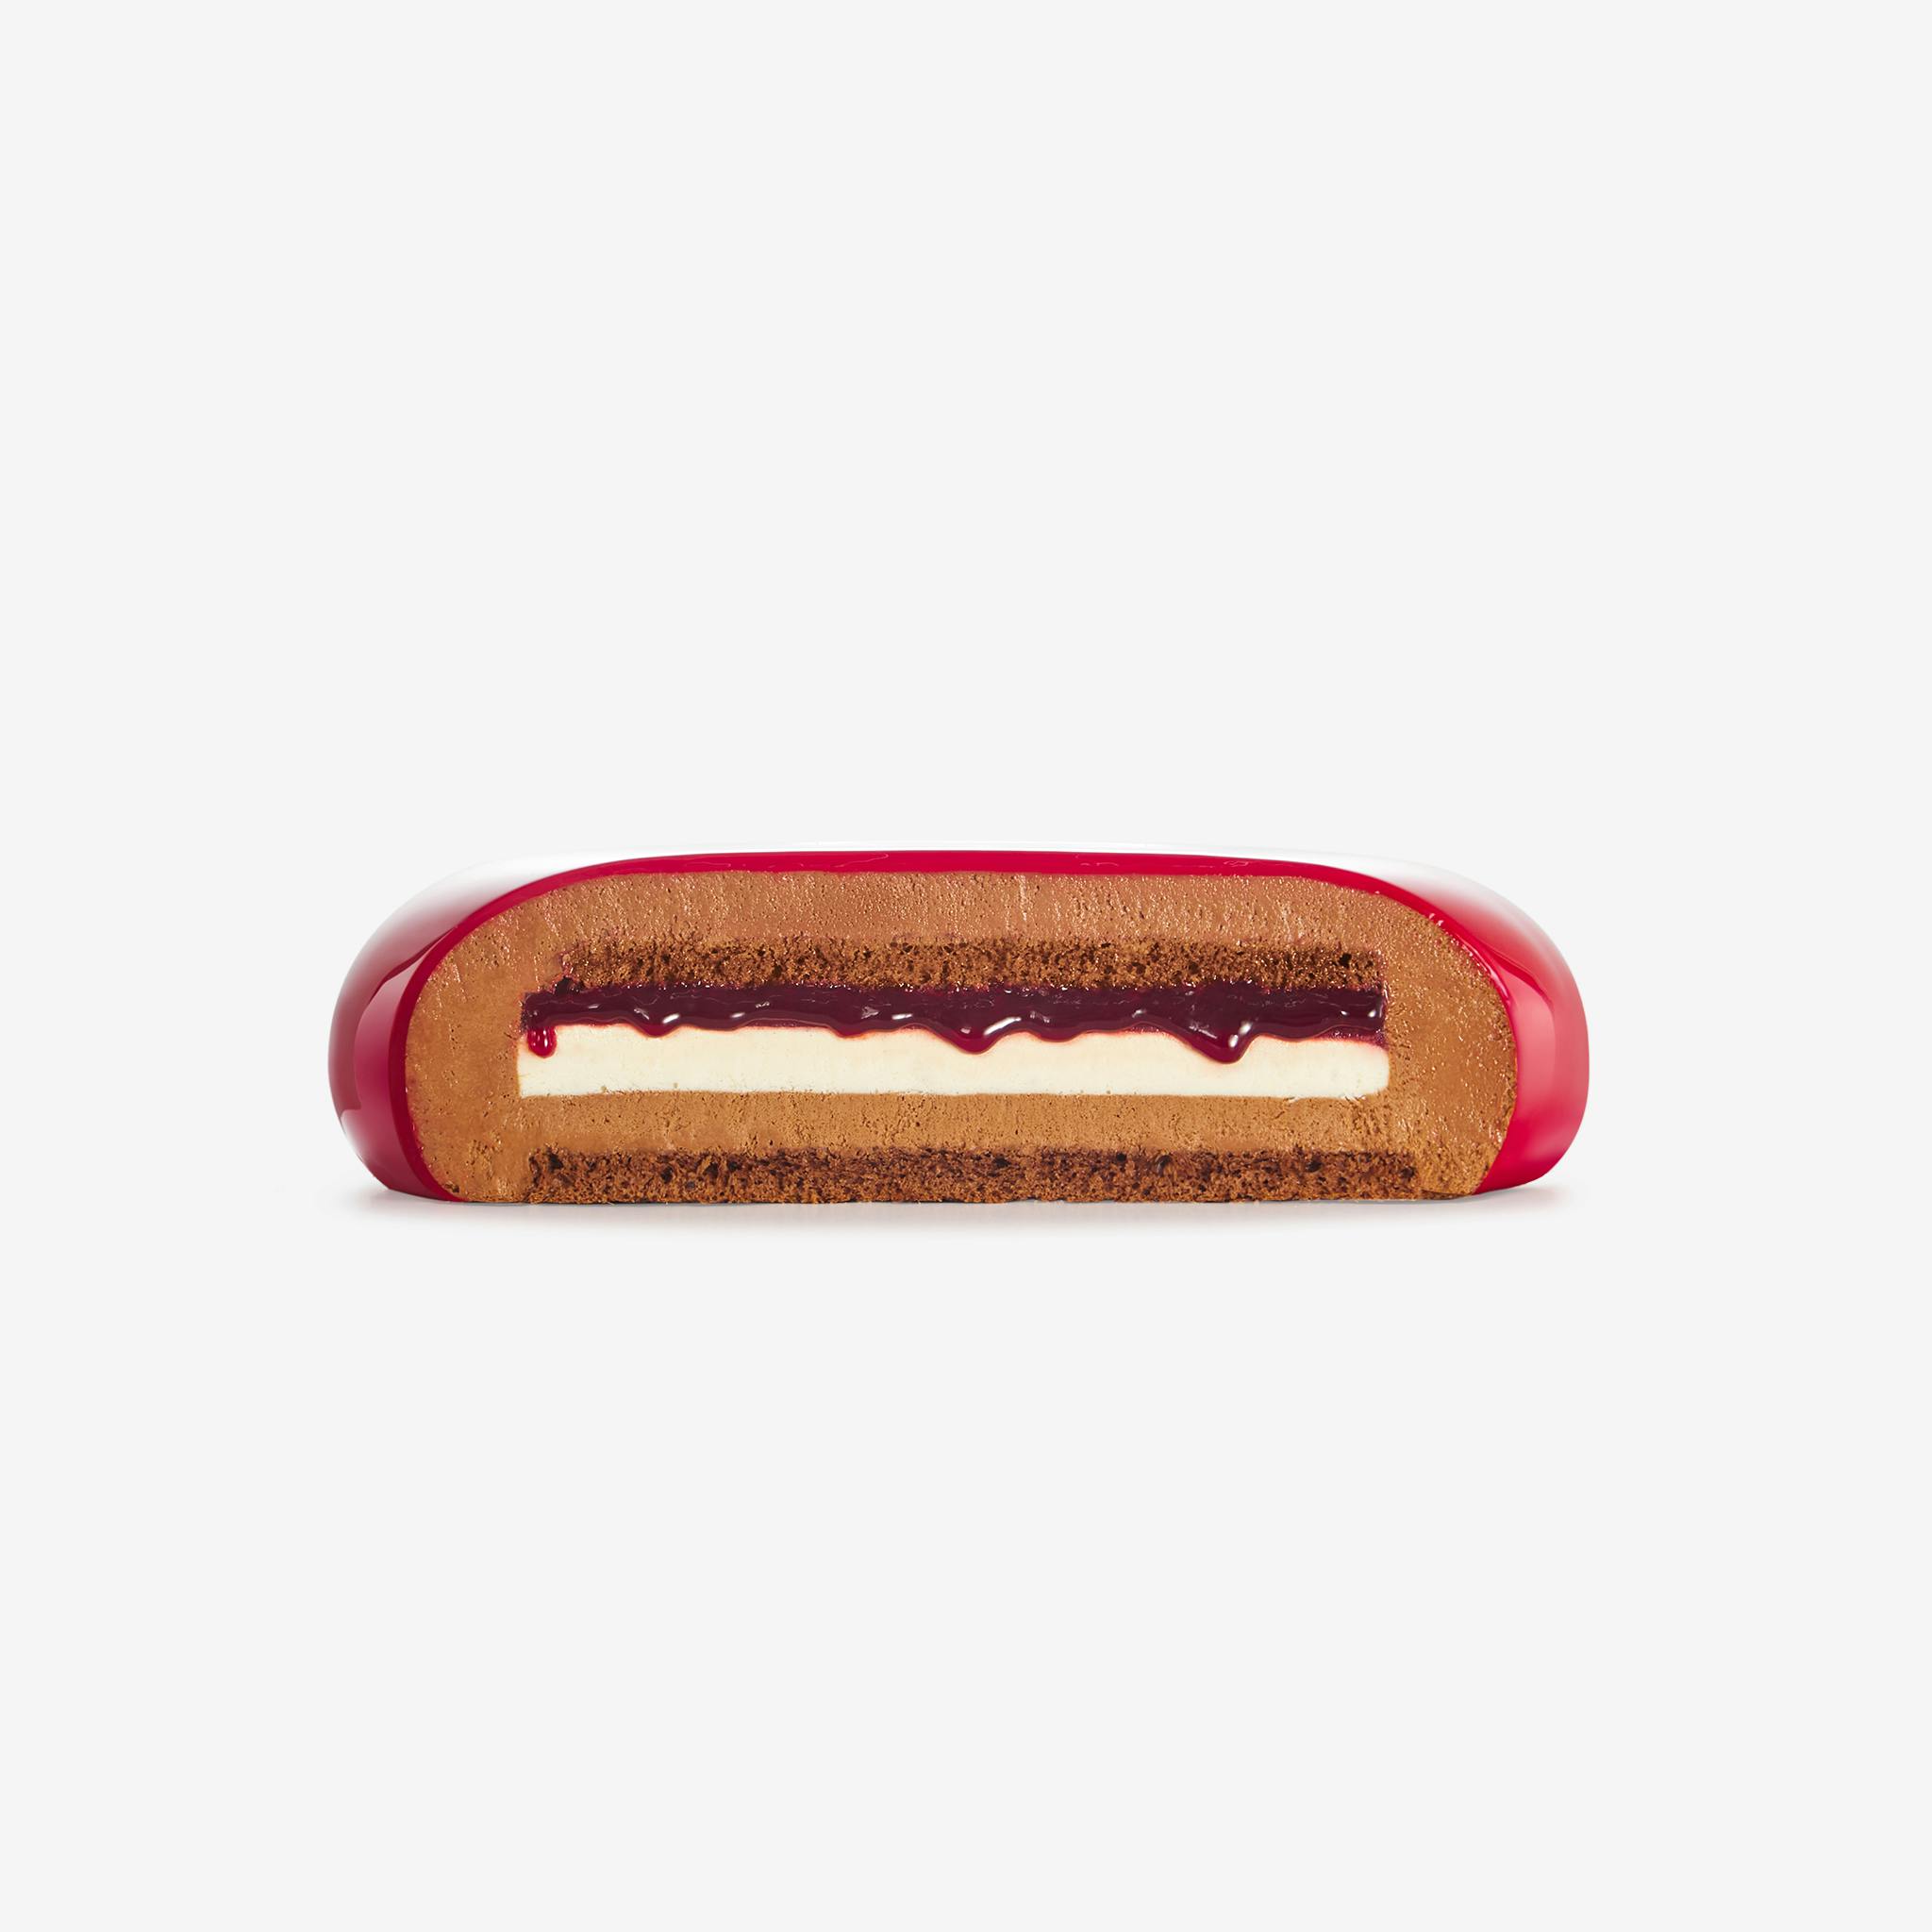 LaFuong Pastry – Beloved Darling – Sô-cô-la, Dâu rừng & Vani. Nếu bạn là fan của Sô-cô-la, hãy thử Beloved Darling - với lớp kem mousse được làm từ sô-cô-la đen chất lượng cao đi cùng mứt quả dâu rừng được nấu tay và một lớp crémeux làm từ quả vanilla Madagascar. ,Cũng giống như sự bùng nổ trong hương vị, vẻ ngoài của chiếc bánh được trang trí bởi lớp tráng gương màu đỏ đun kết hợp với chiếc lông vũ phủ nhũ vàng đồng sang trọng. Đây sẽ là lựa chọn hoàn hảo cho mọi bữa tiệc của bạn. 